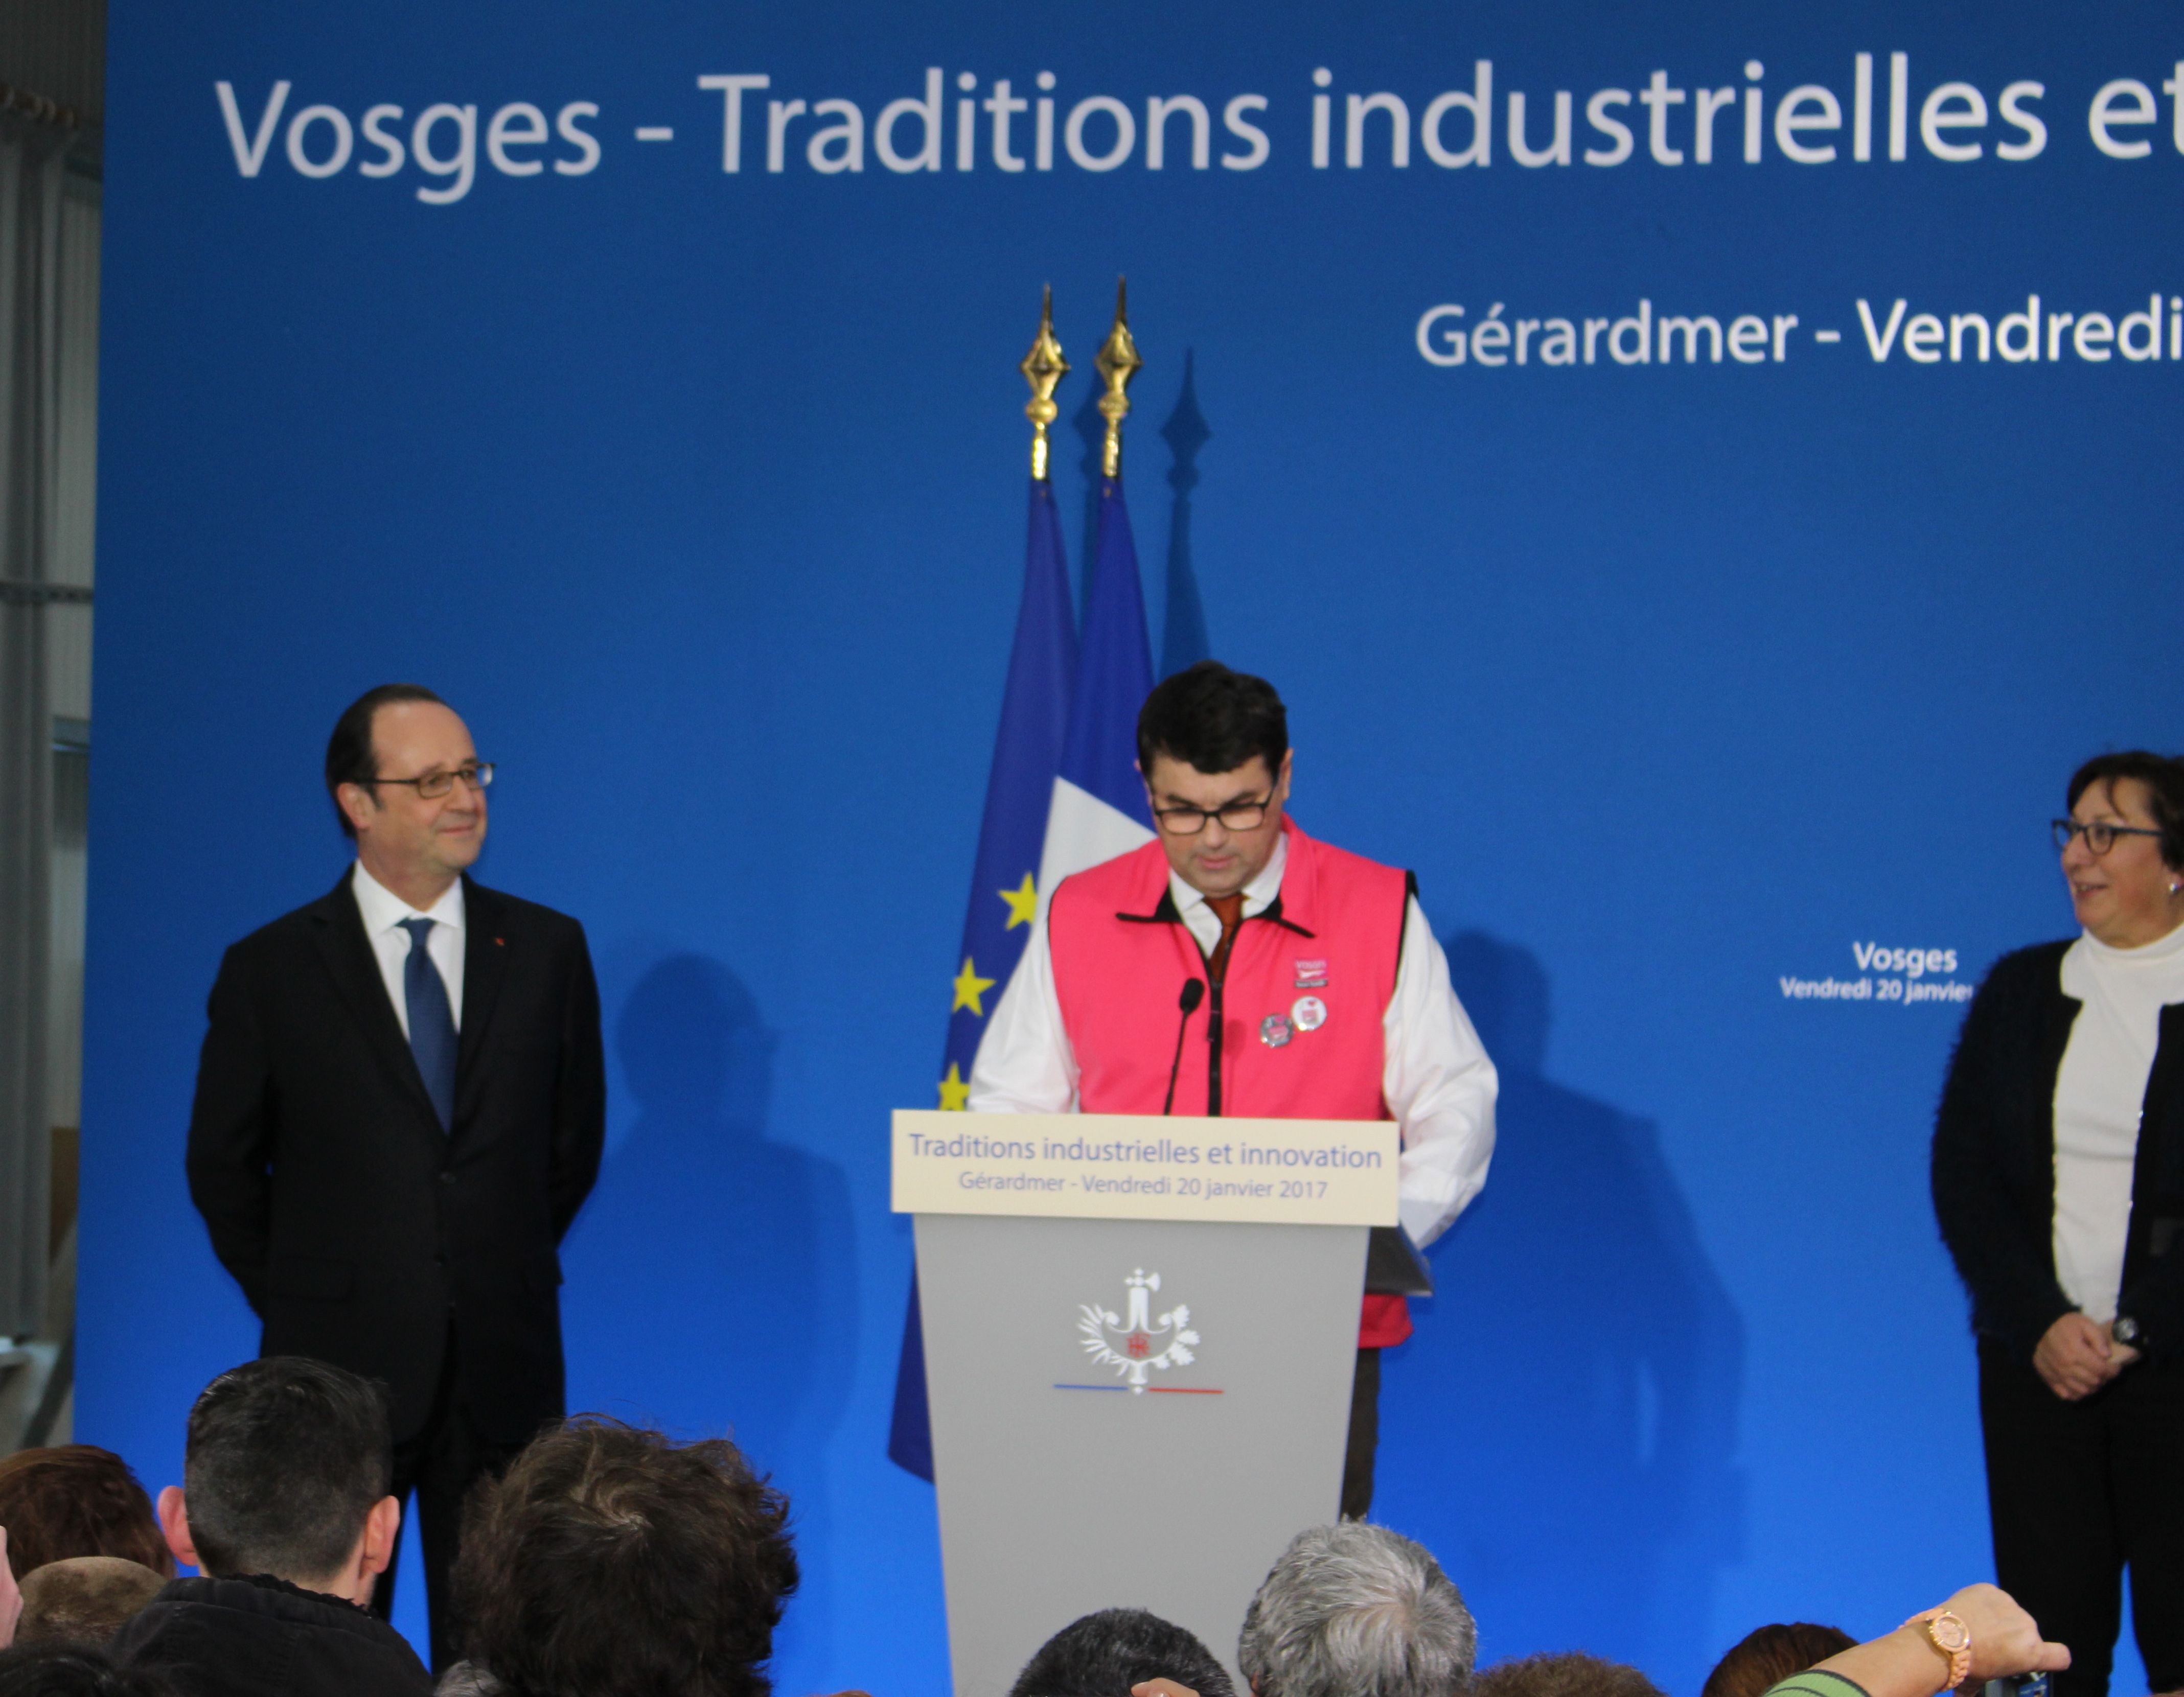 Le Président Hollande met le Textile Vosgien à l'honneur